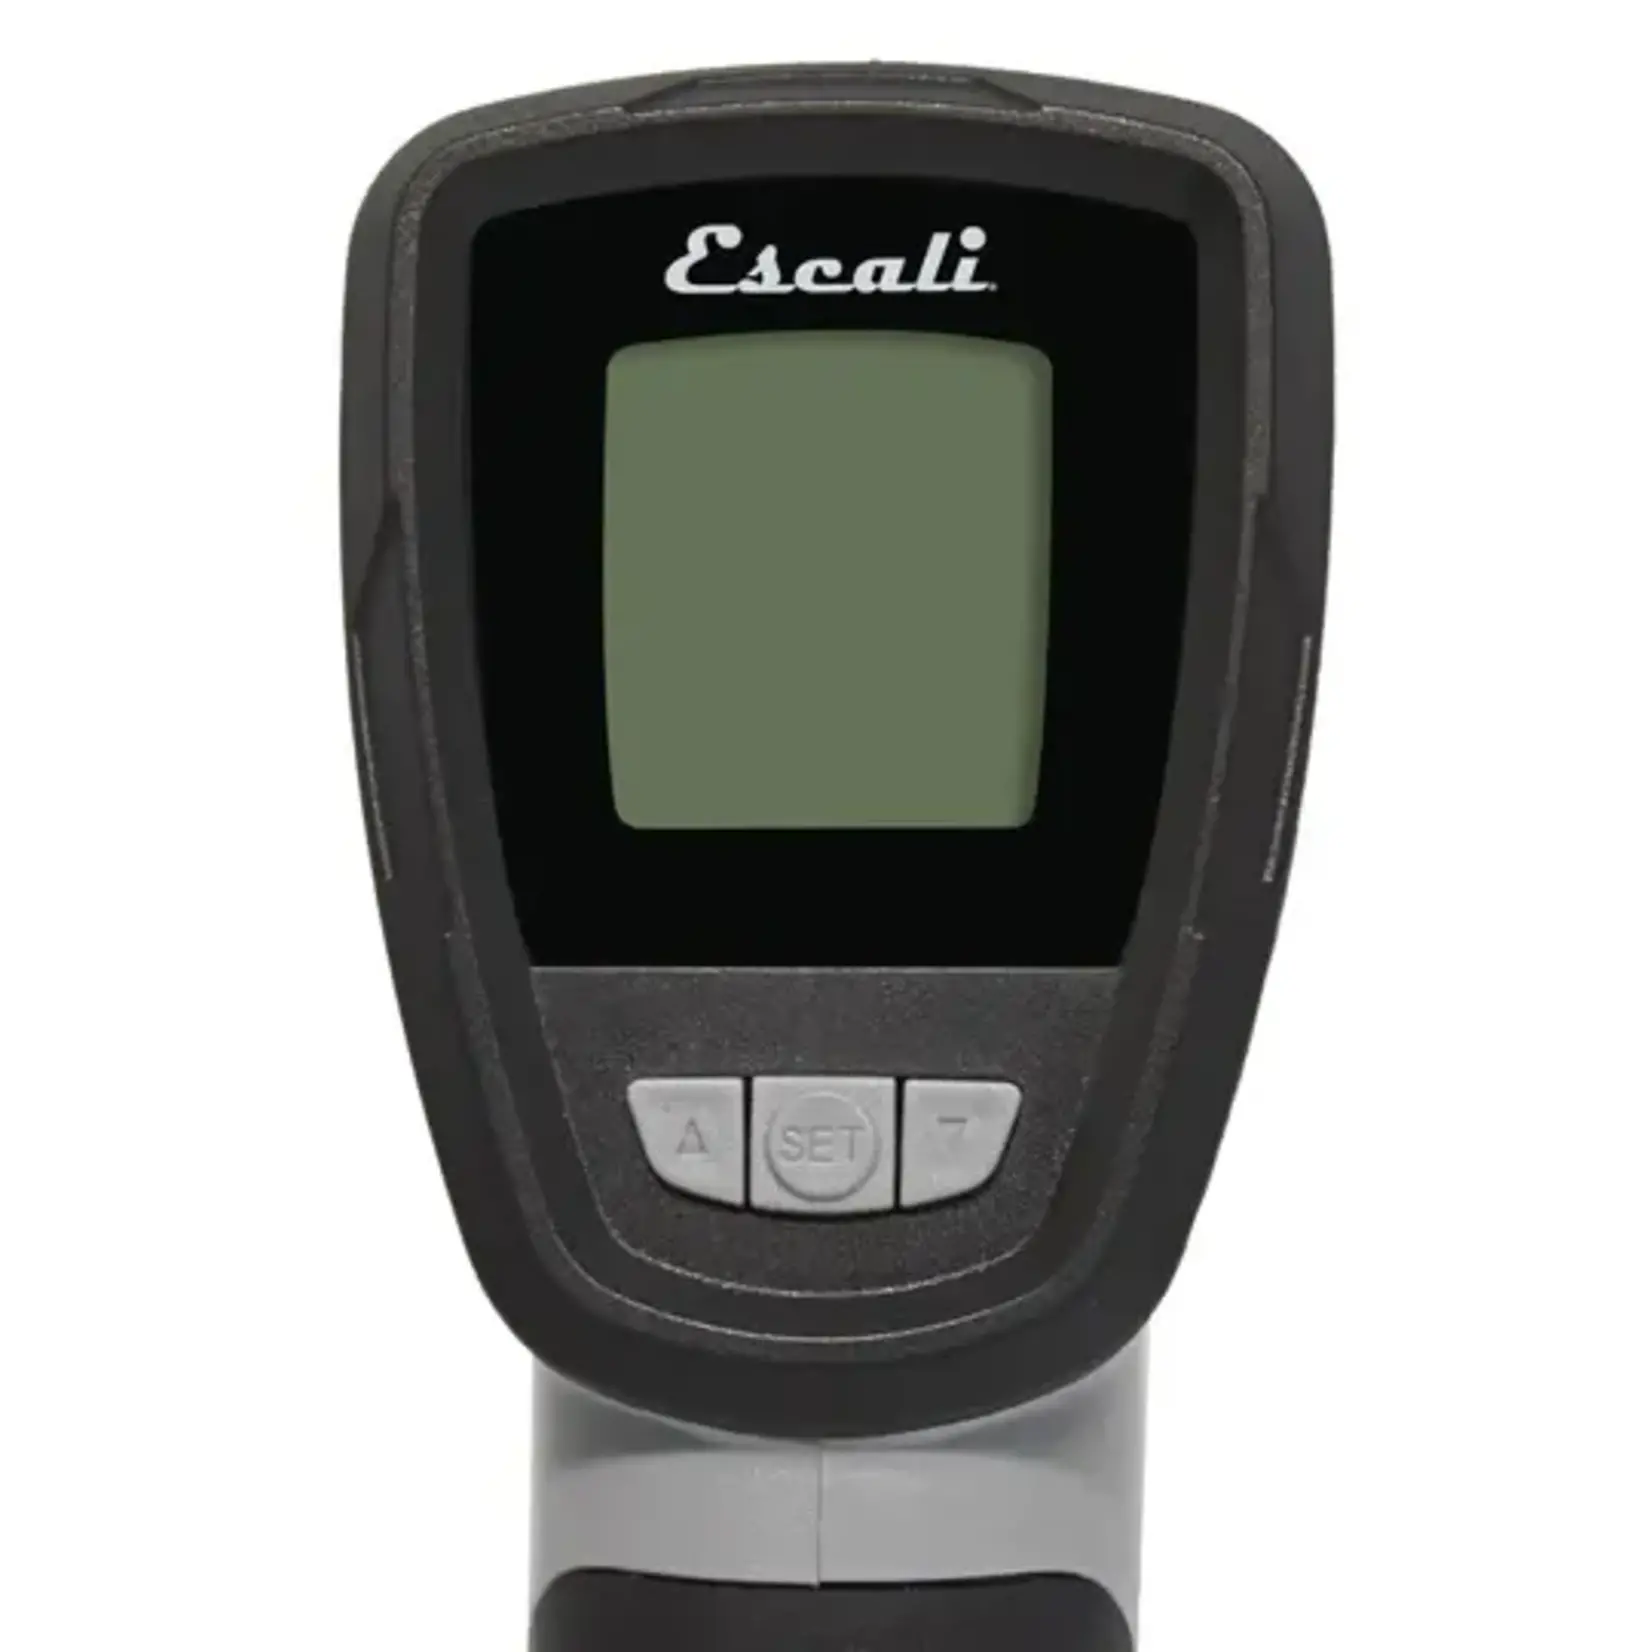 Escali Escali - Infrared/Probe Digital Thermometer